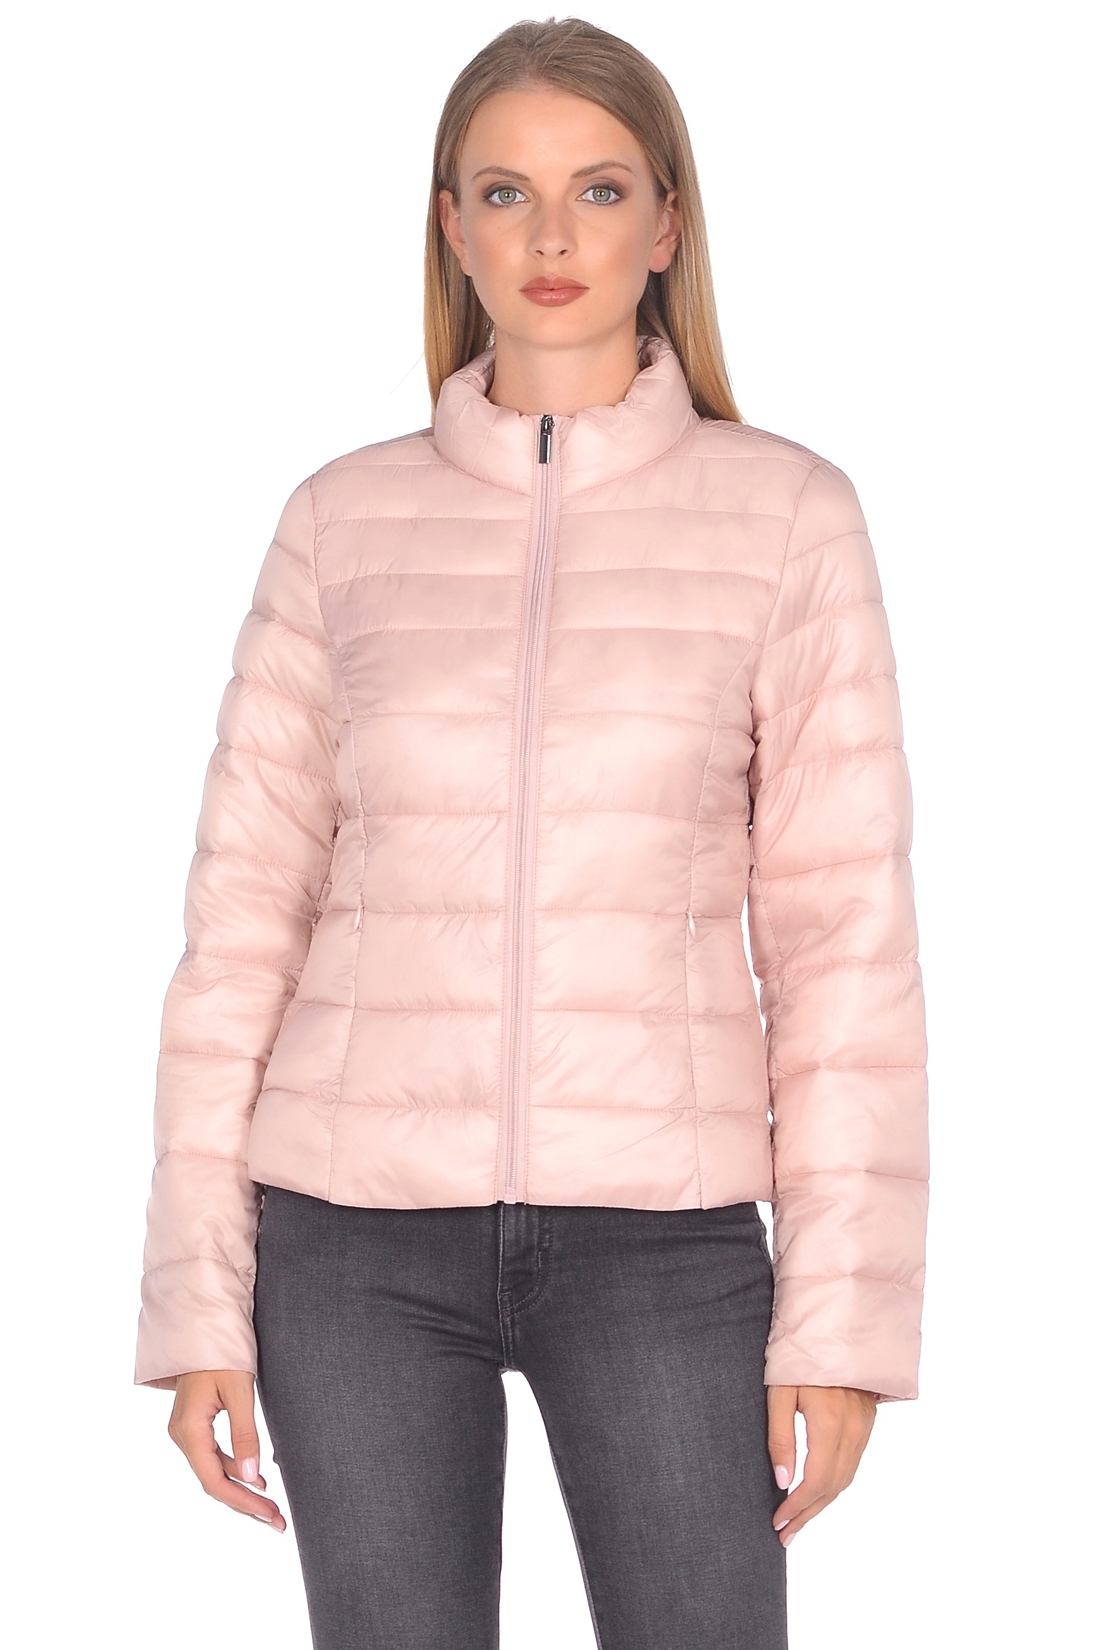 Приталенная куртка с продольной простёжкой (арт. baon B038599), размер XS, цвет розовый Приталенная куртка с продольной простёжкой (арт. baon B038599) - фото 1